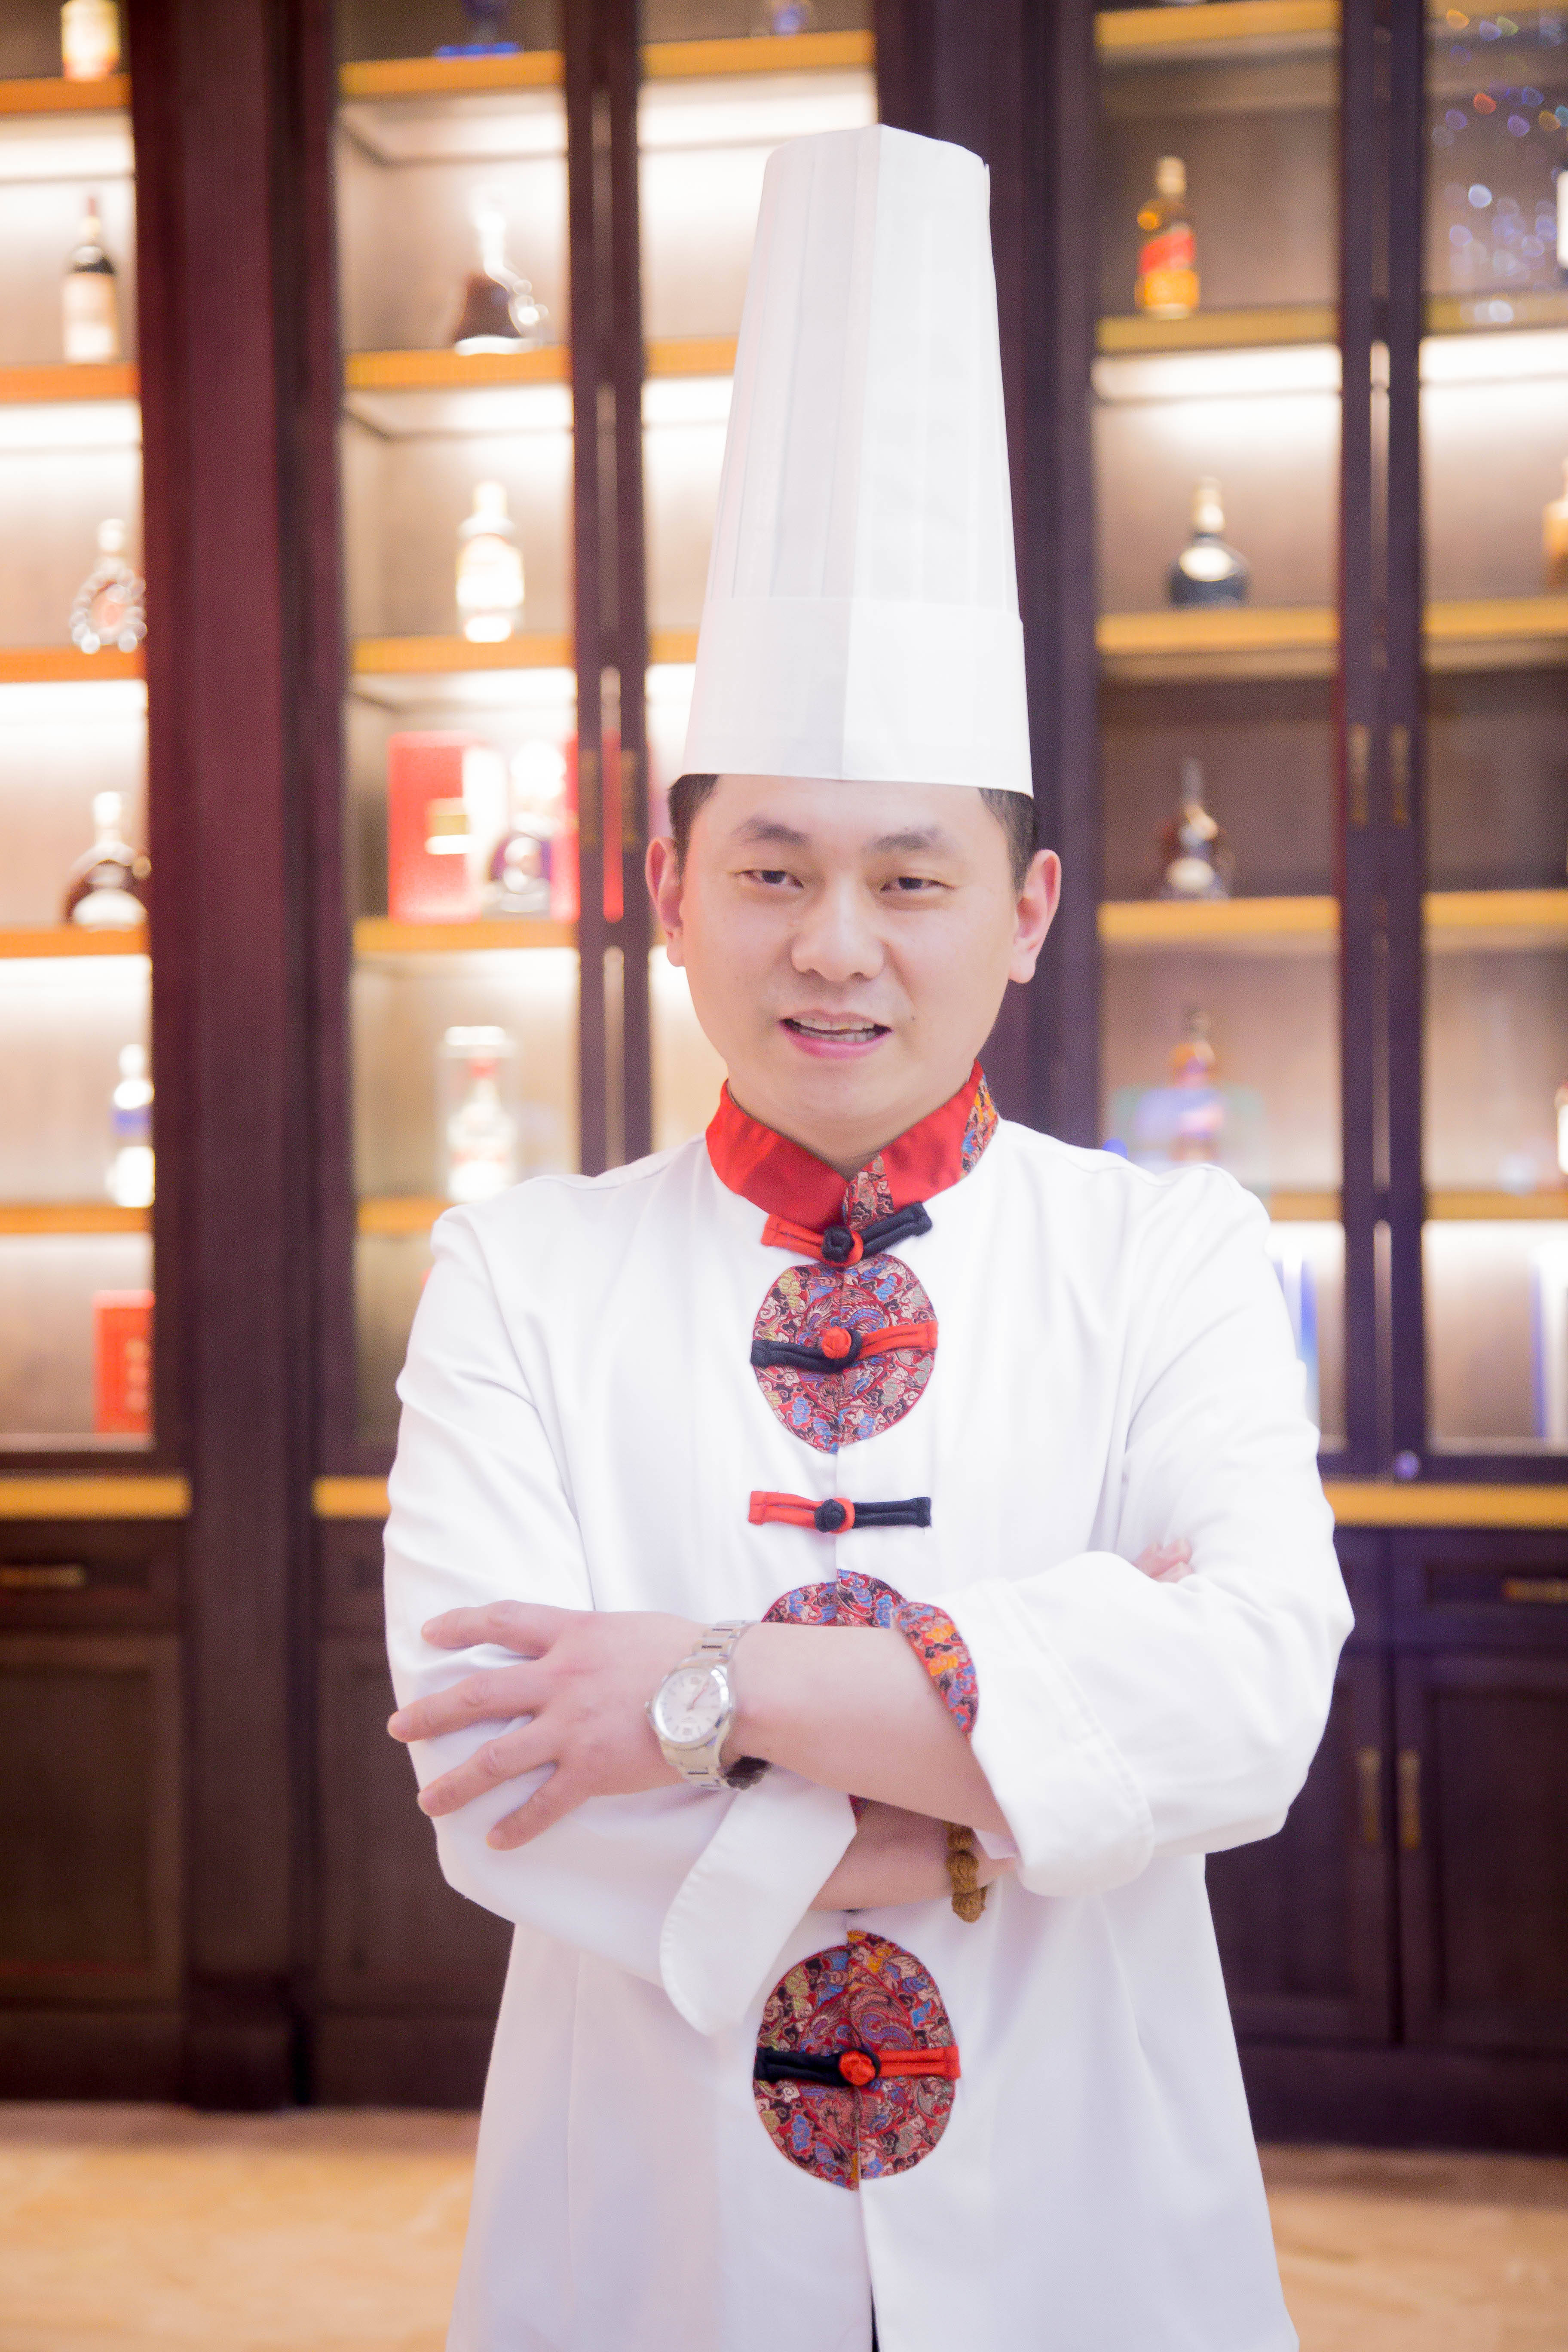 中国厨师照片图片